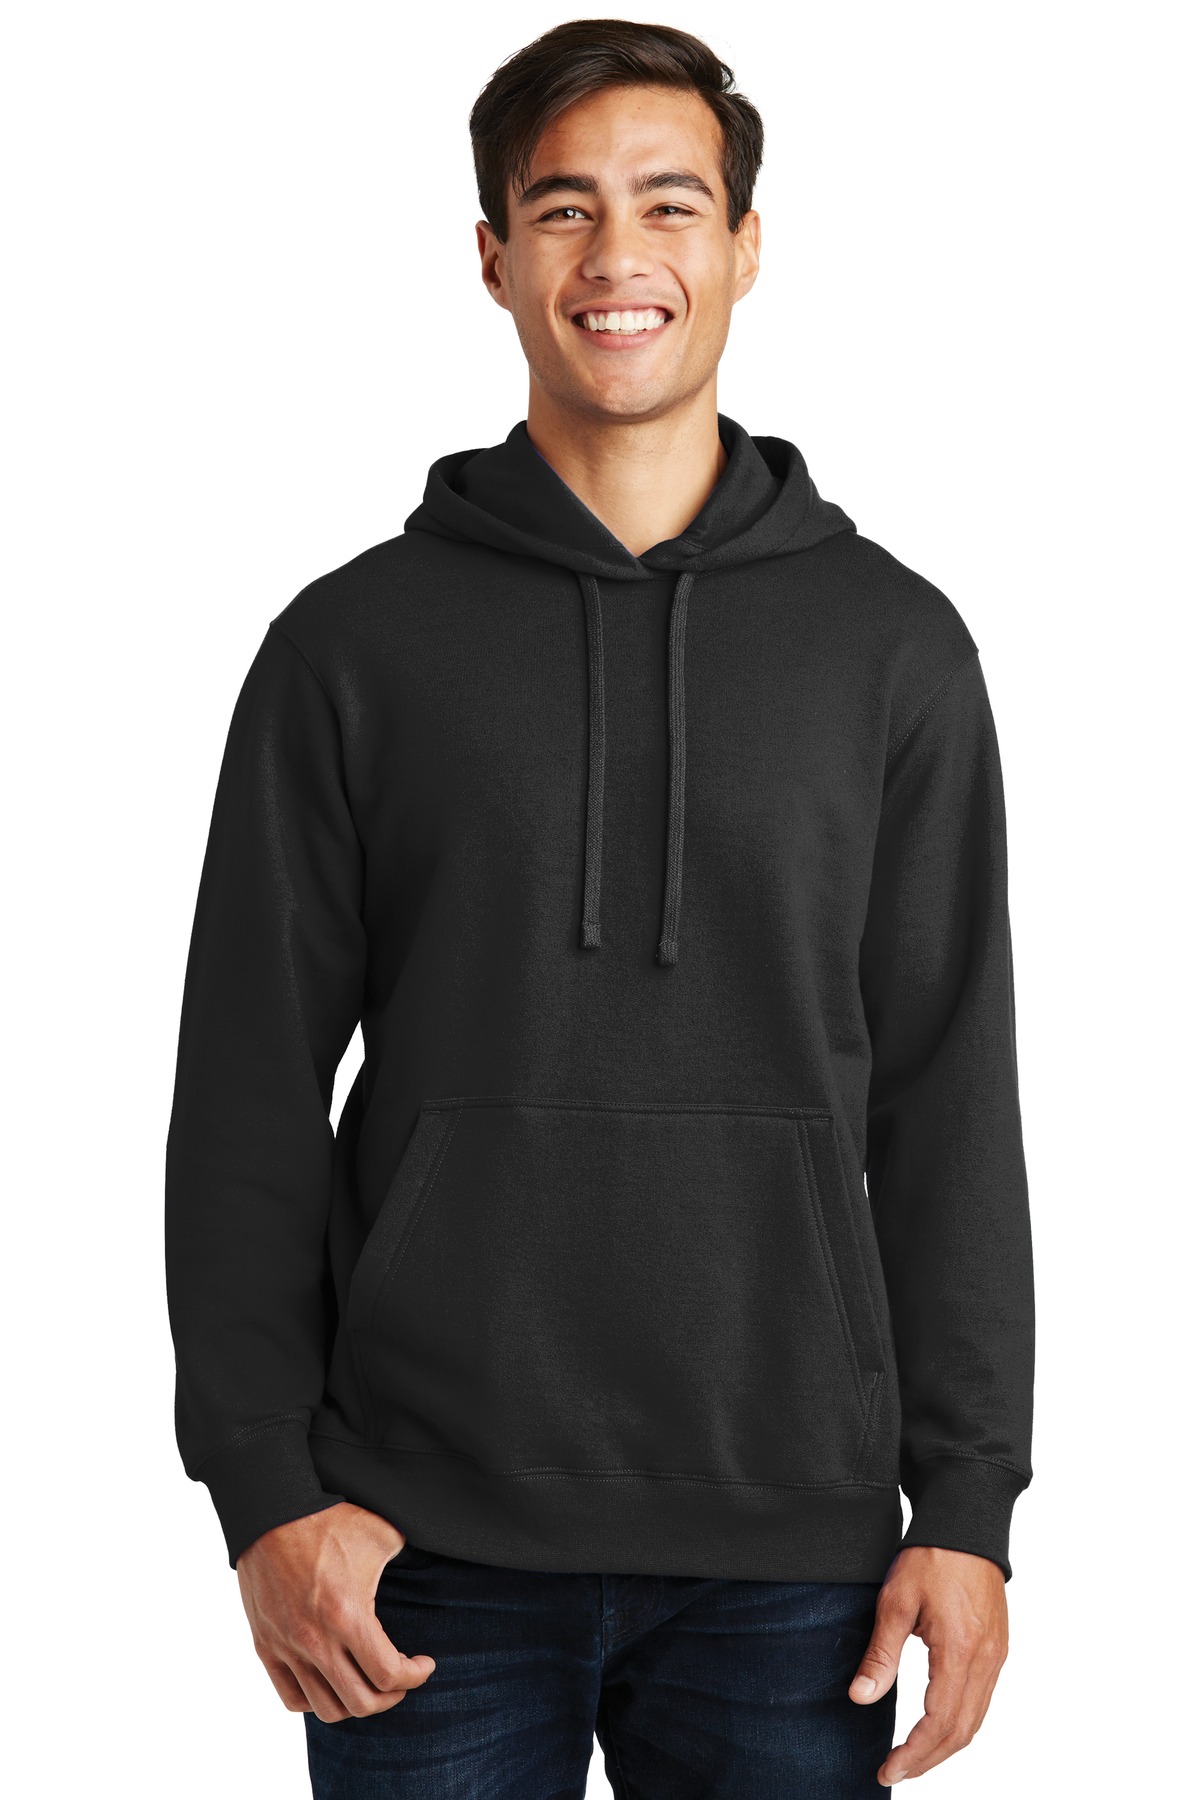 Port & Company Fan Favorite Fleece Pullover Hooded Sweatshirt - PC850H